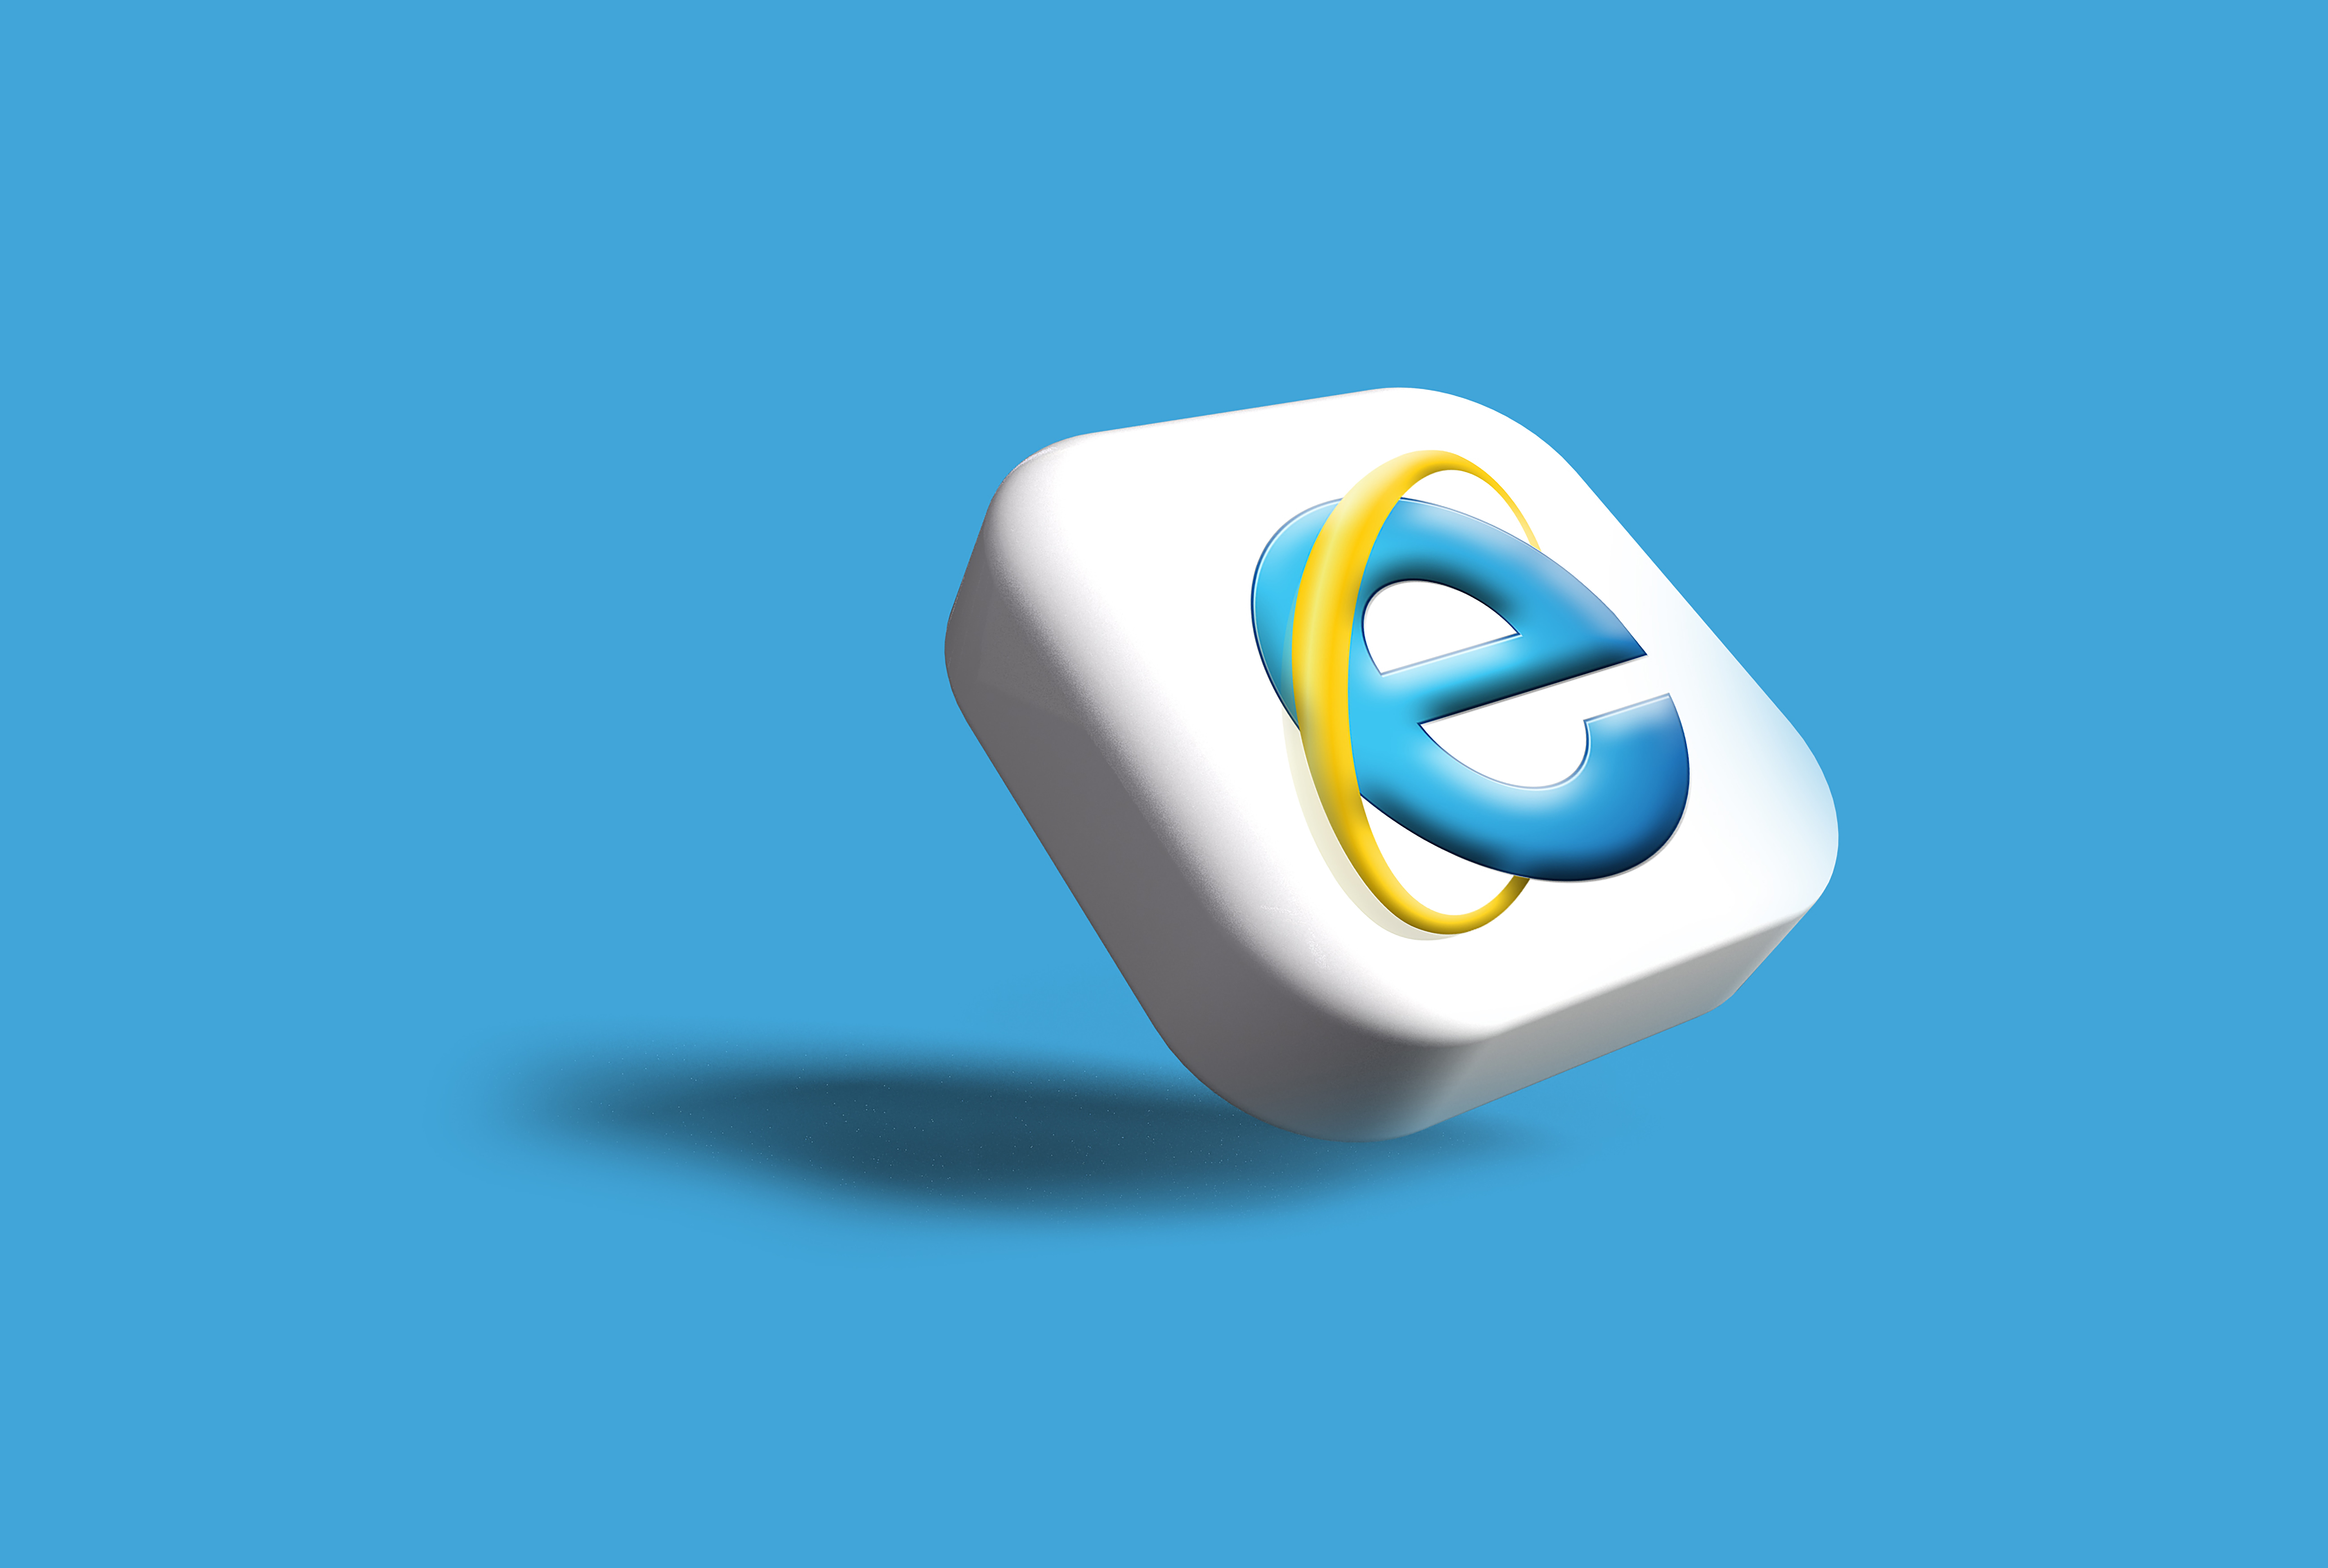 logo for internet explorer